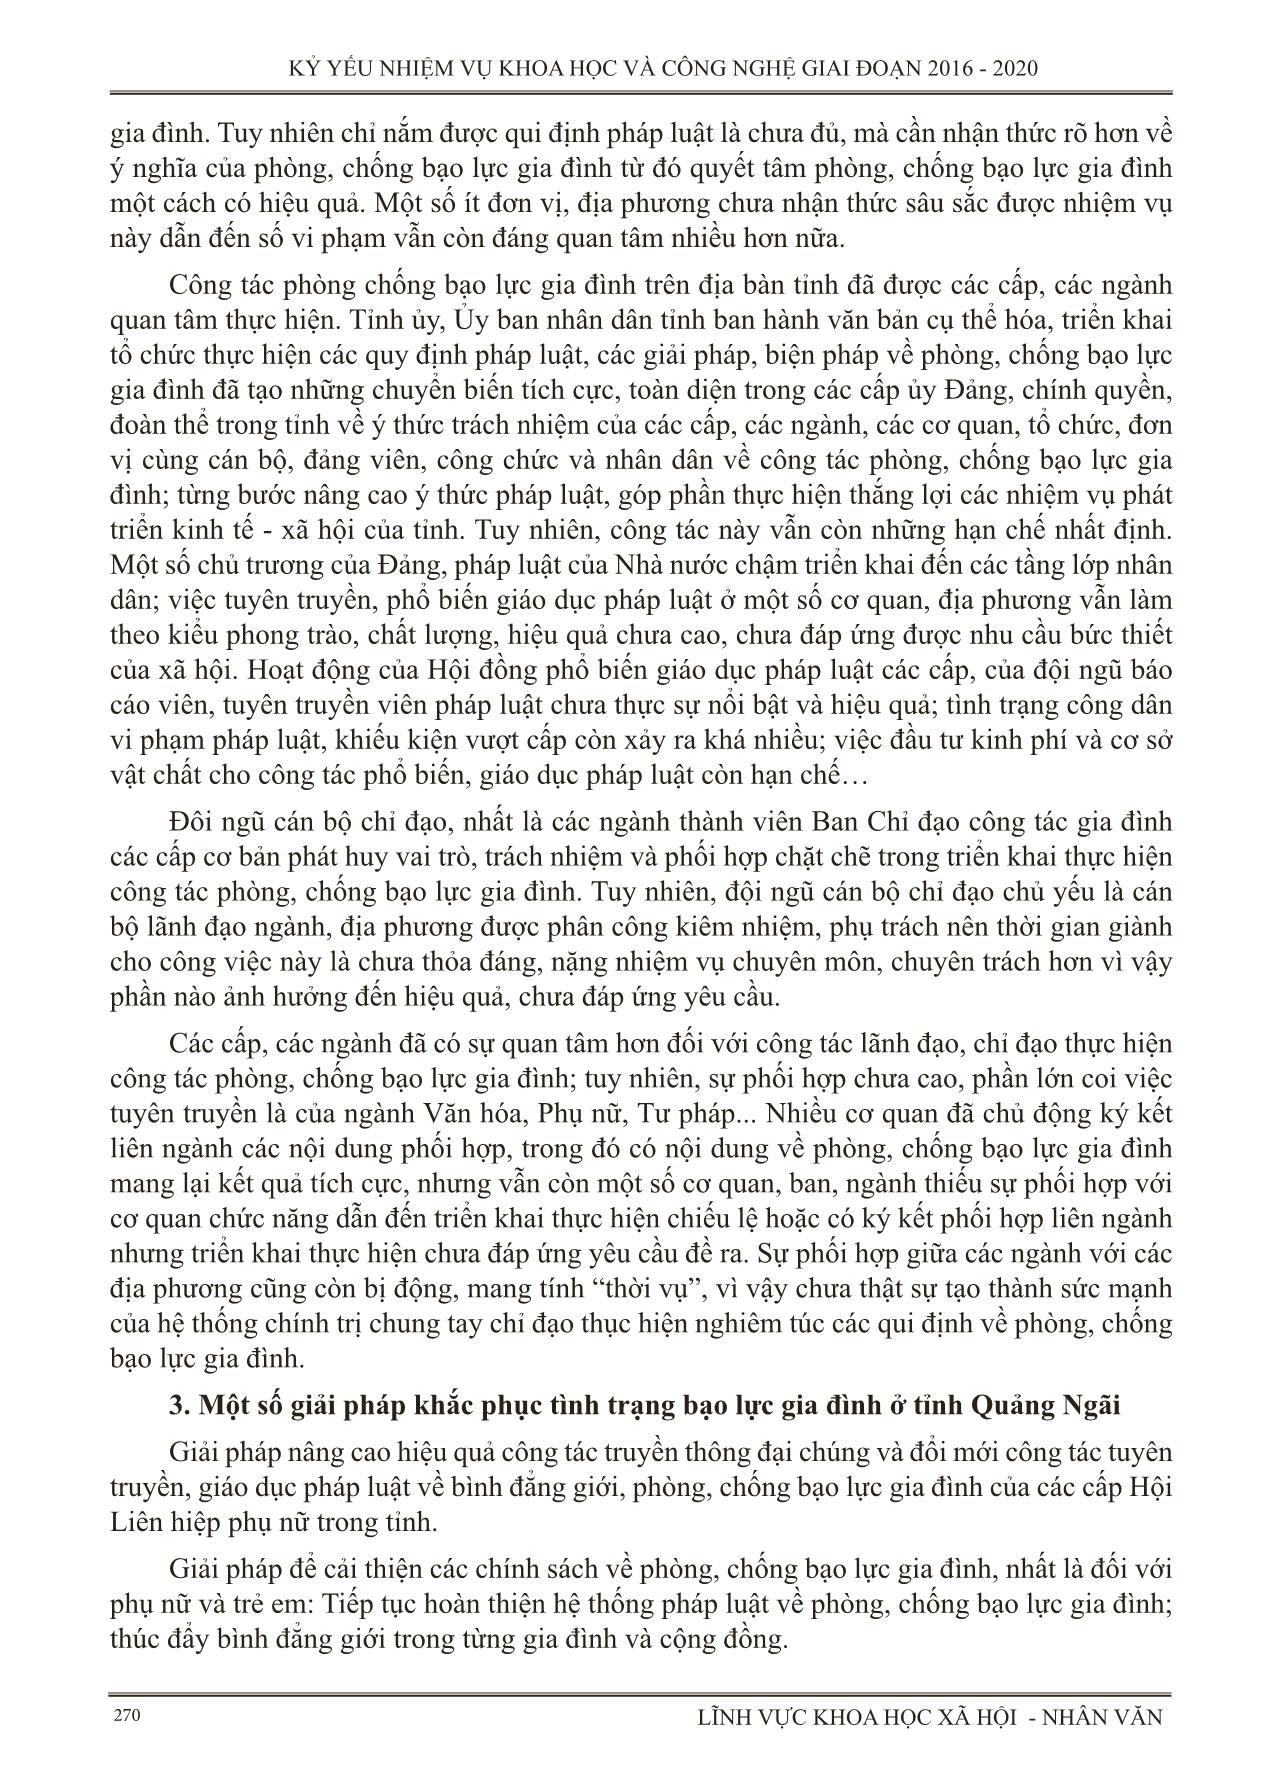 Nghiên cứu tình hình bạo lực gia đình ở tỉnh Quảng Ngãi trang 4